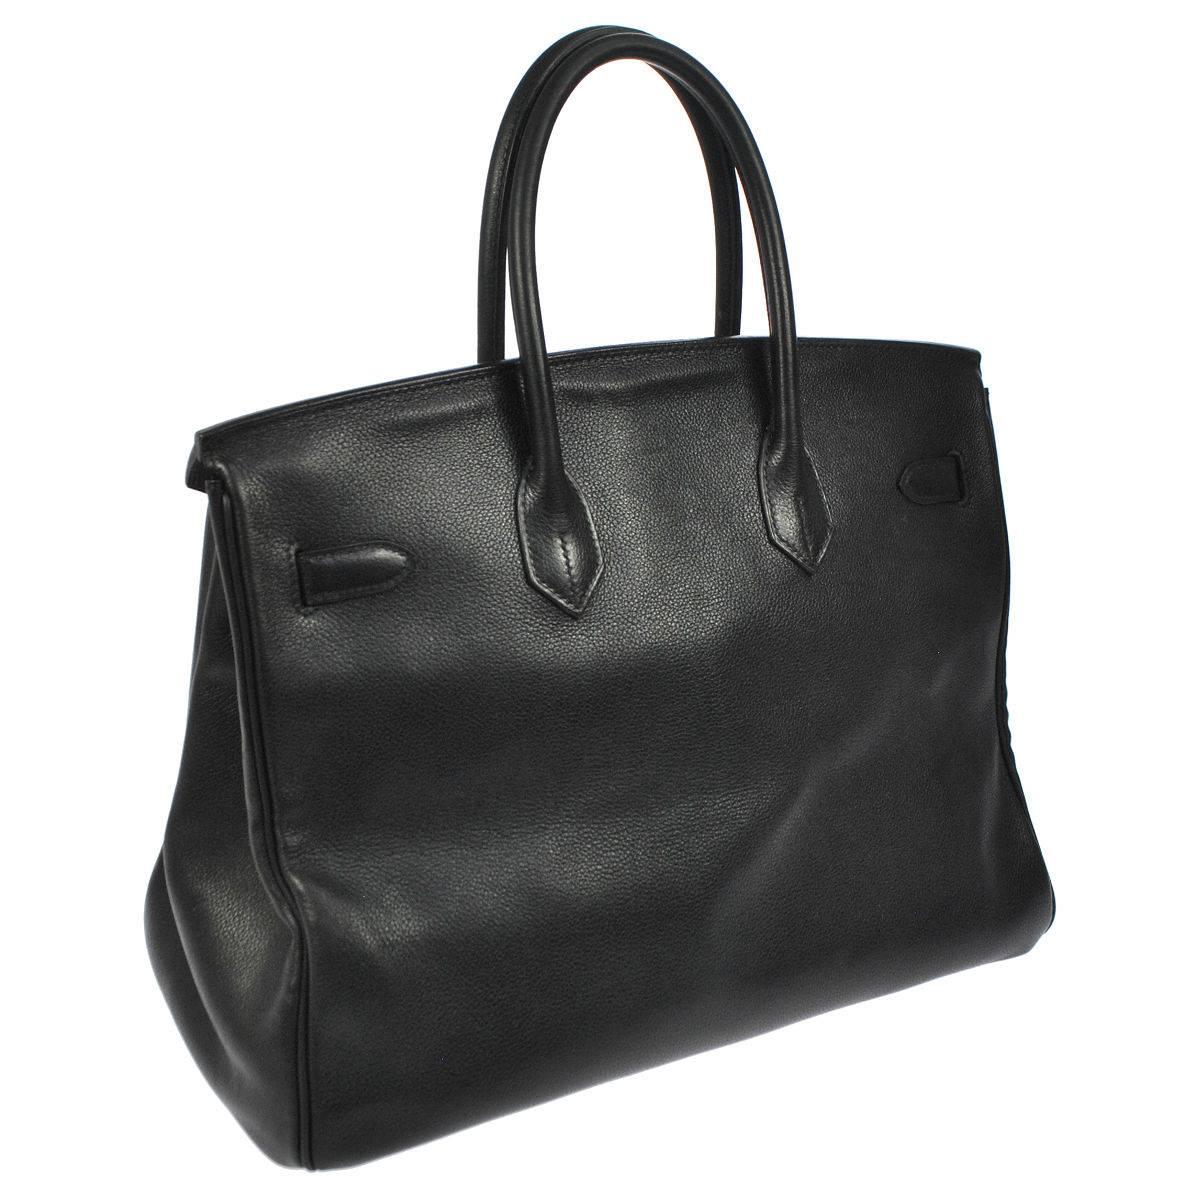 Hermes 35 Black Leather Gold Carryall Tote Top Handle Satchel Shoulder Bag 1